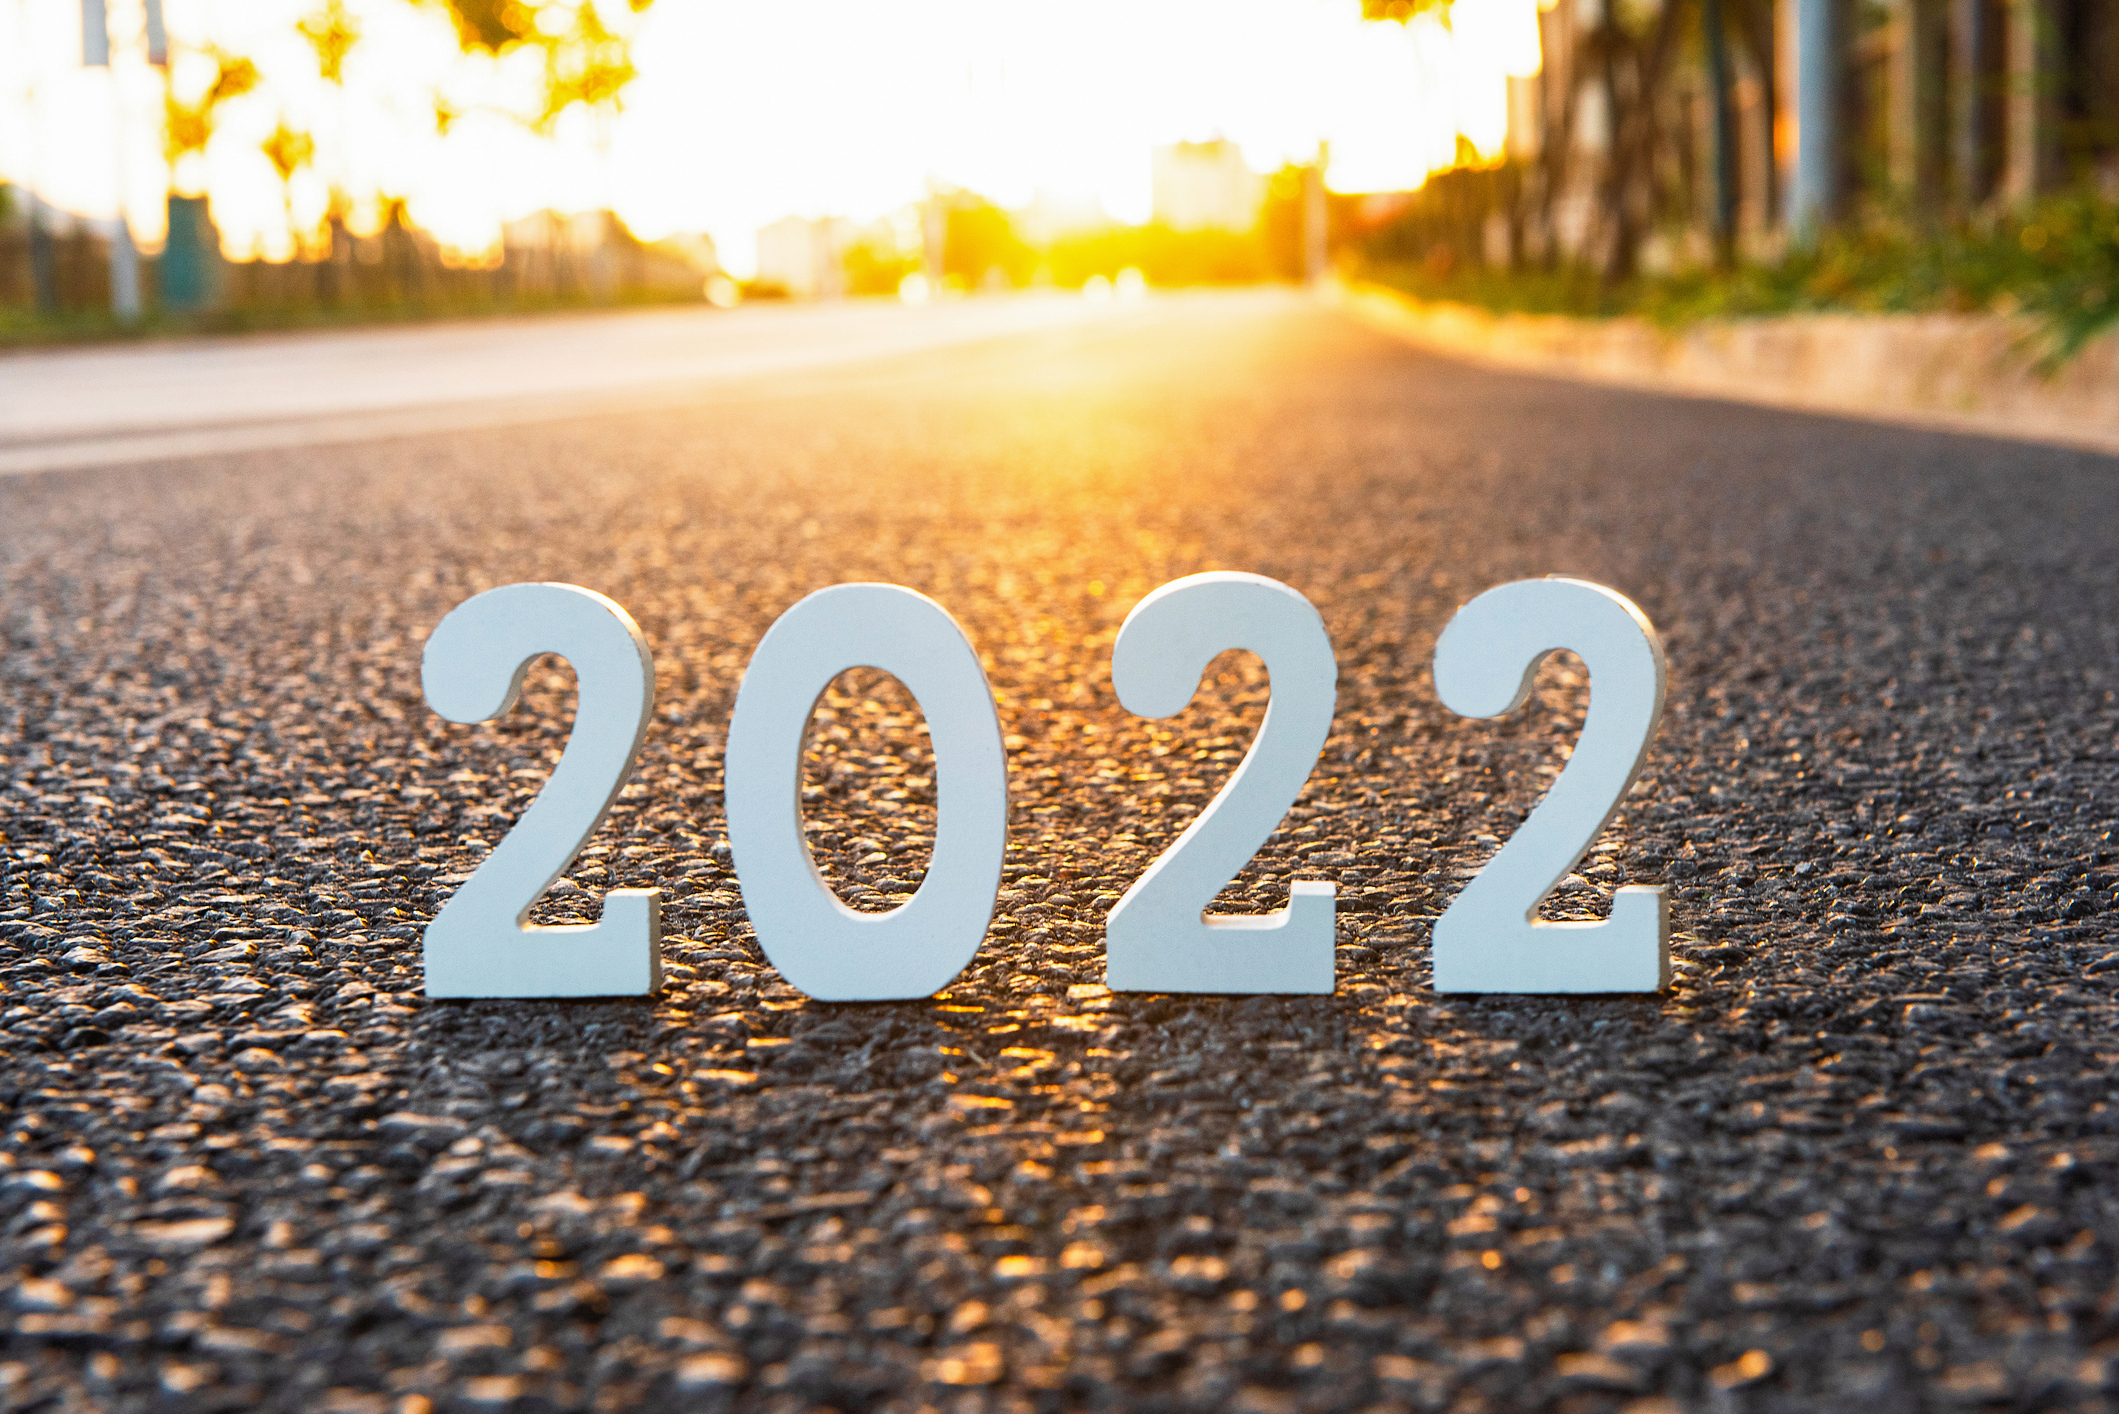 Economic Update: The 2022 Economic Outlook